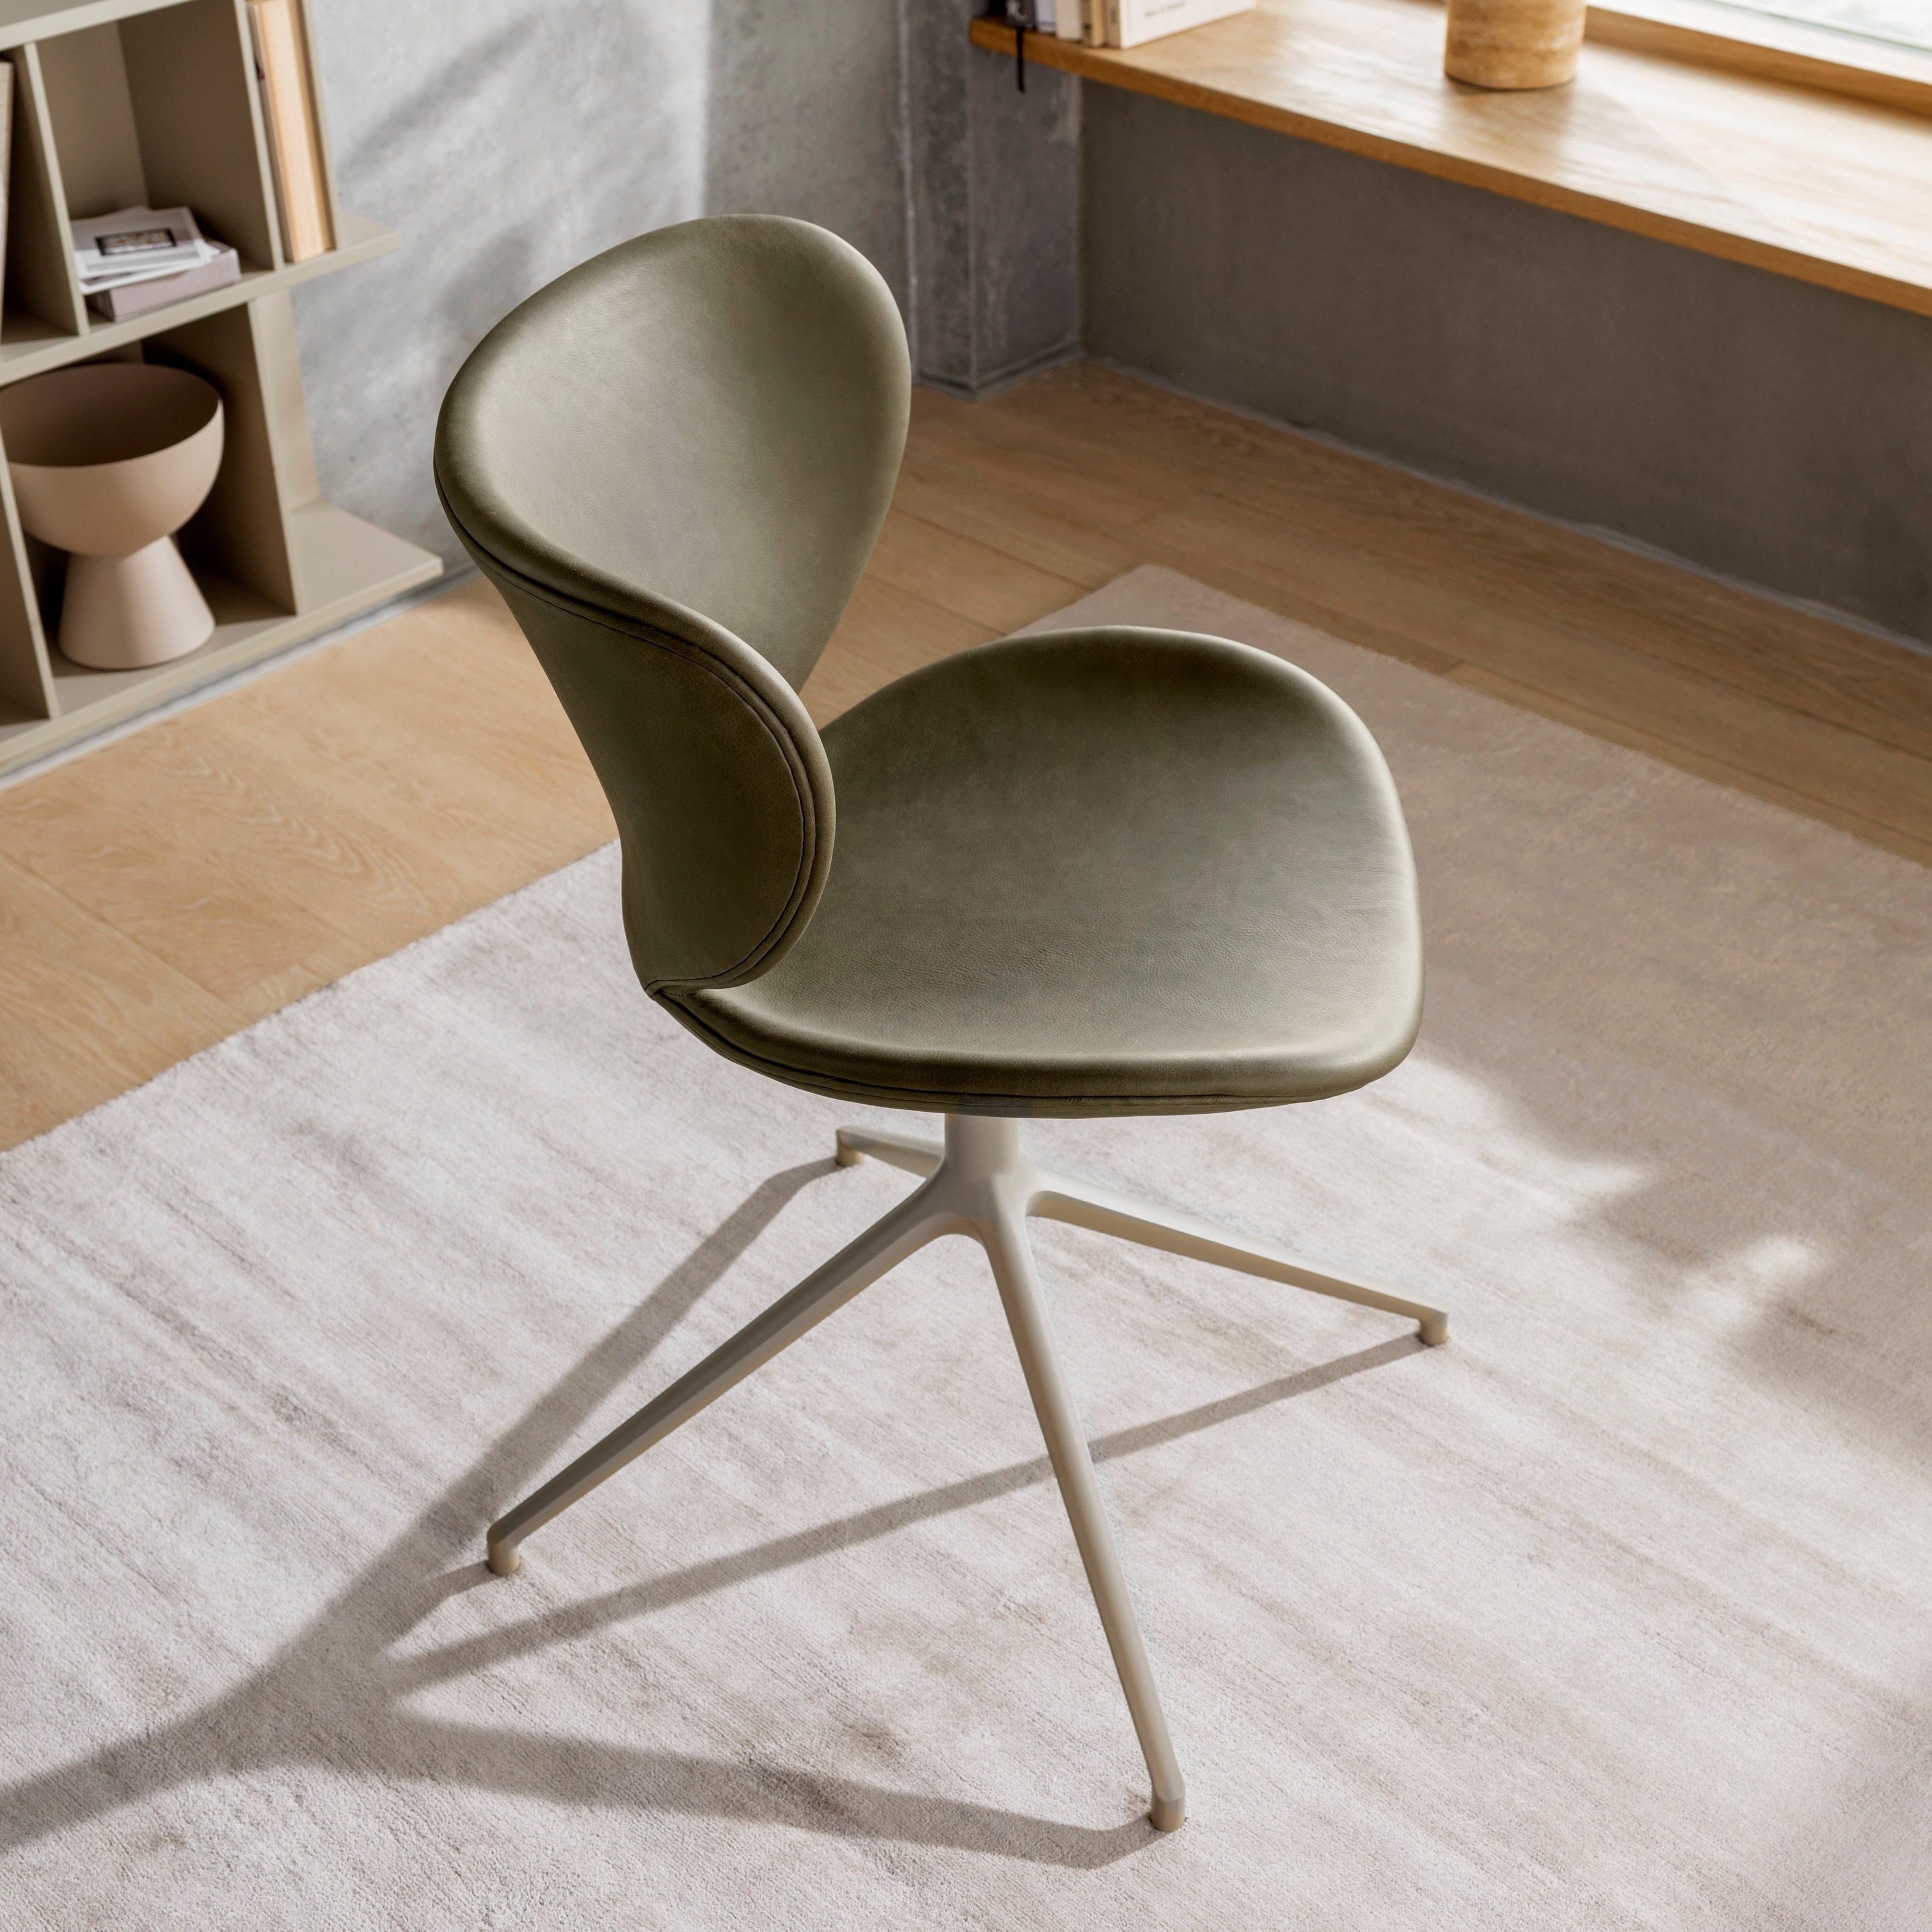 Cadeira verde azeitona com base de metal numa divisão ensolarada com prateleiras de madeira e janela.